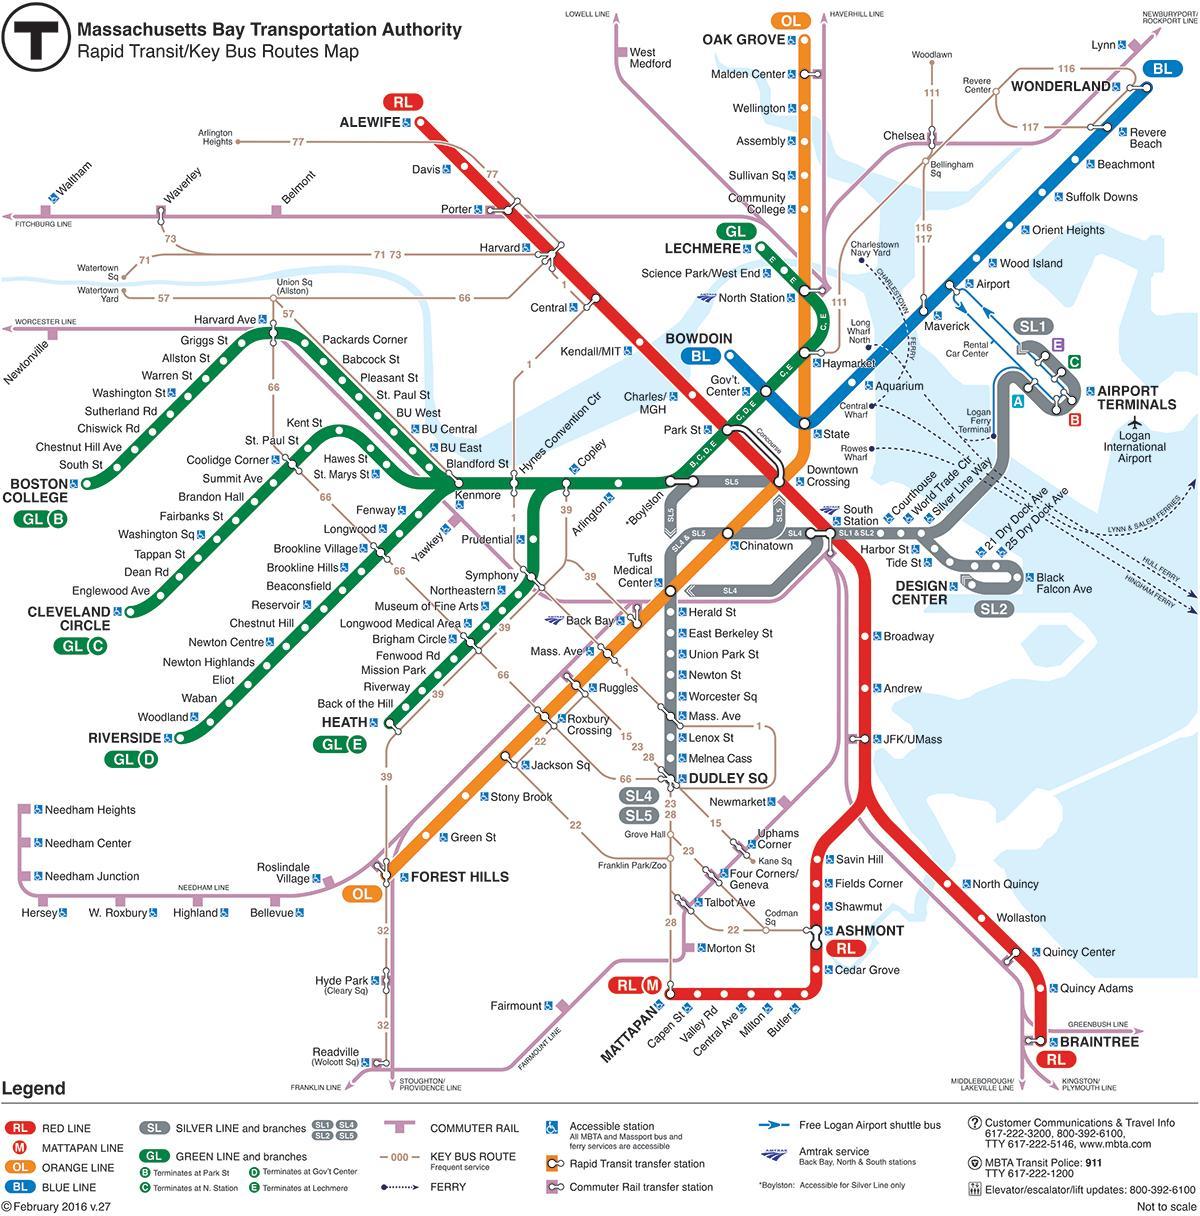 Karta podzemne željeznice mbta crvena linija